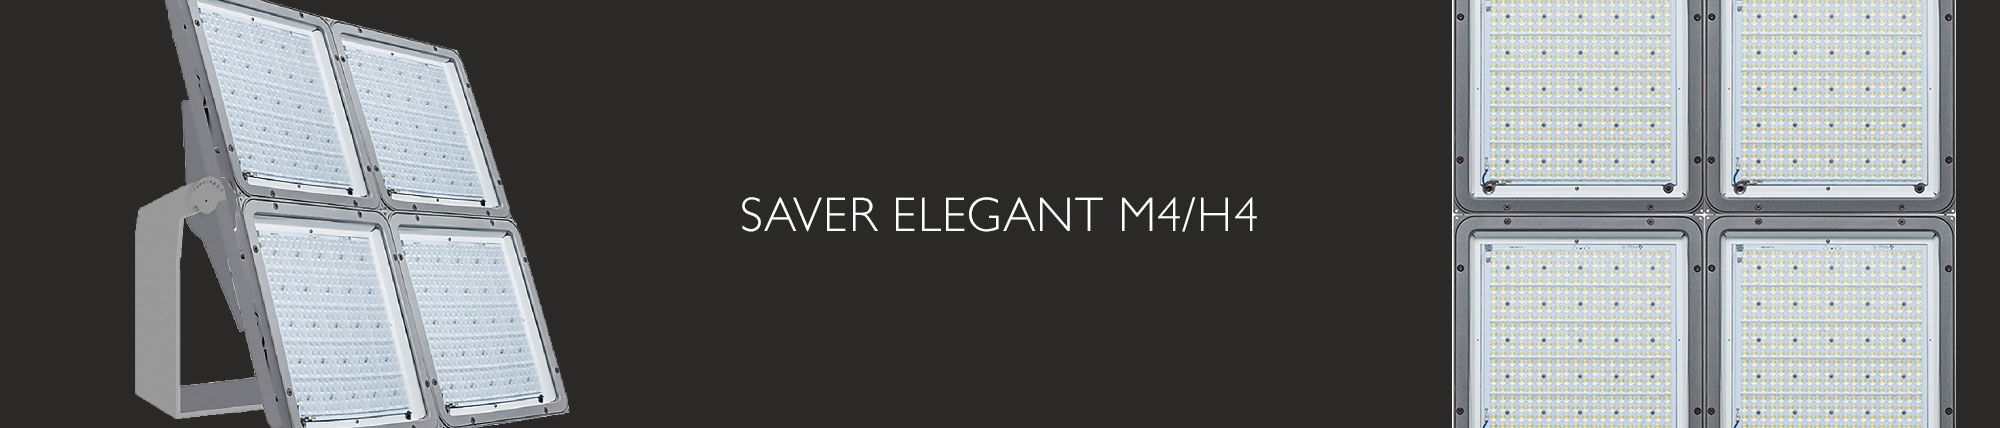 Saver Elegant M4/H4